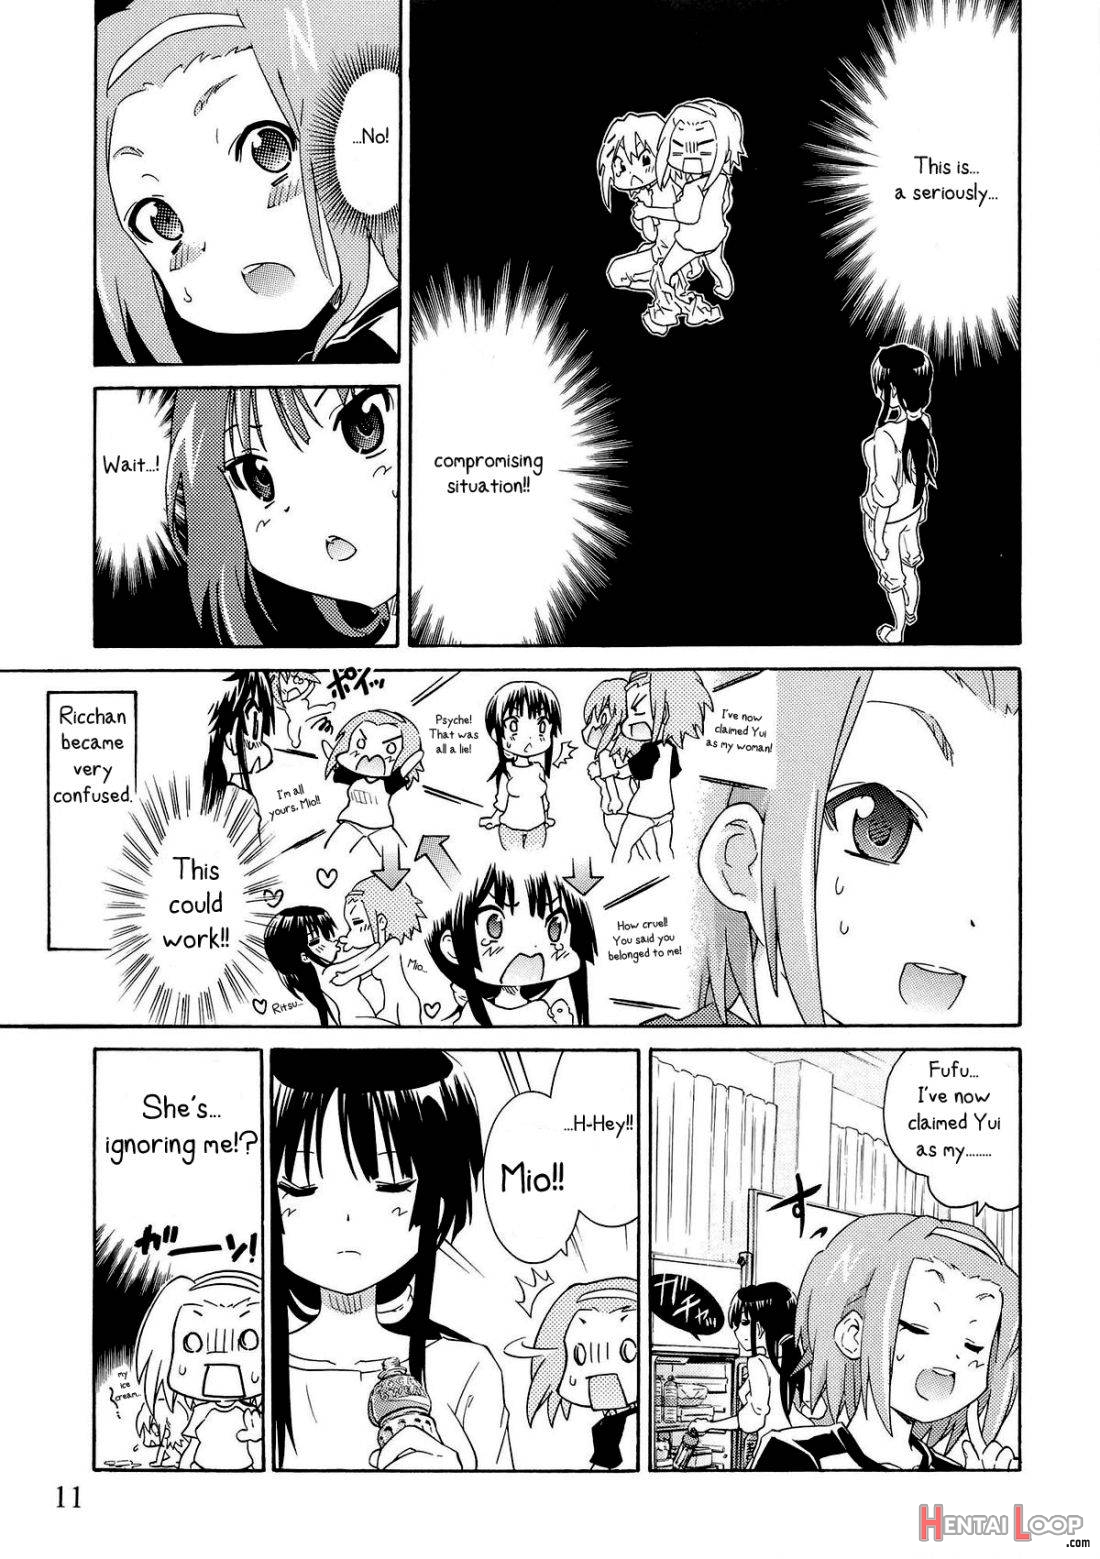 Yuri-on! #2 “kosokoso Mio-chan!” page 9